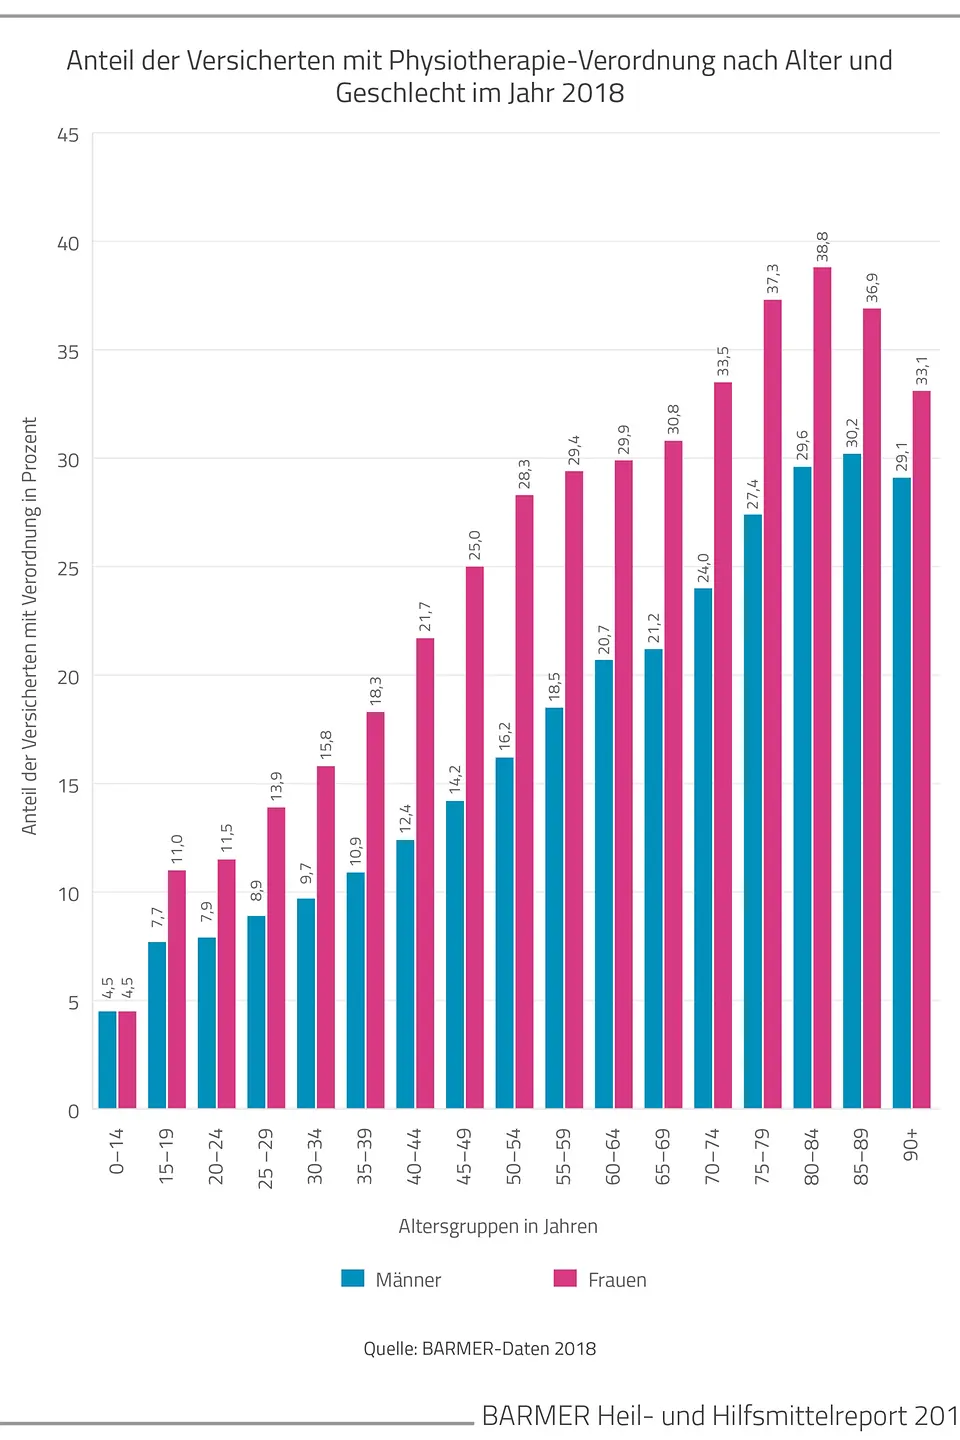 Die Grafik zeigt den Anteil der Versicherten mit Physiotherapie-Verordnung nach Alter und Geschlecht im Jahr 2018